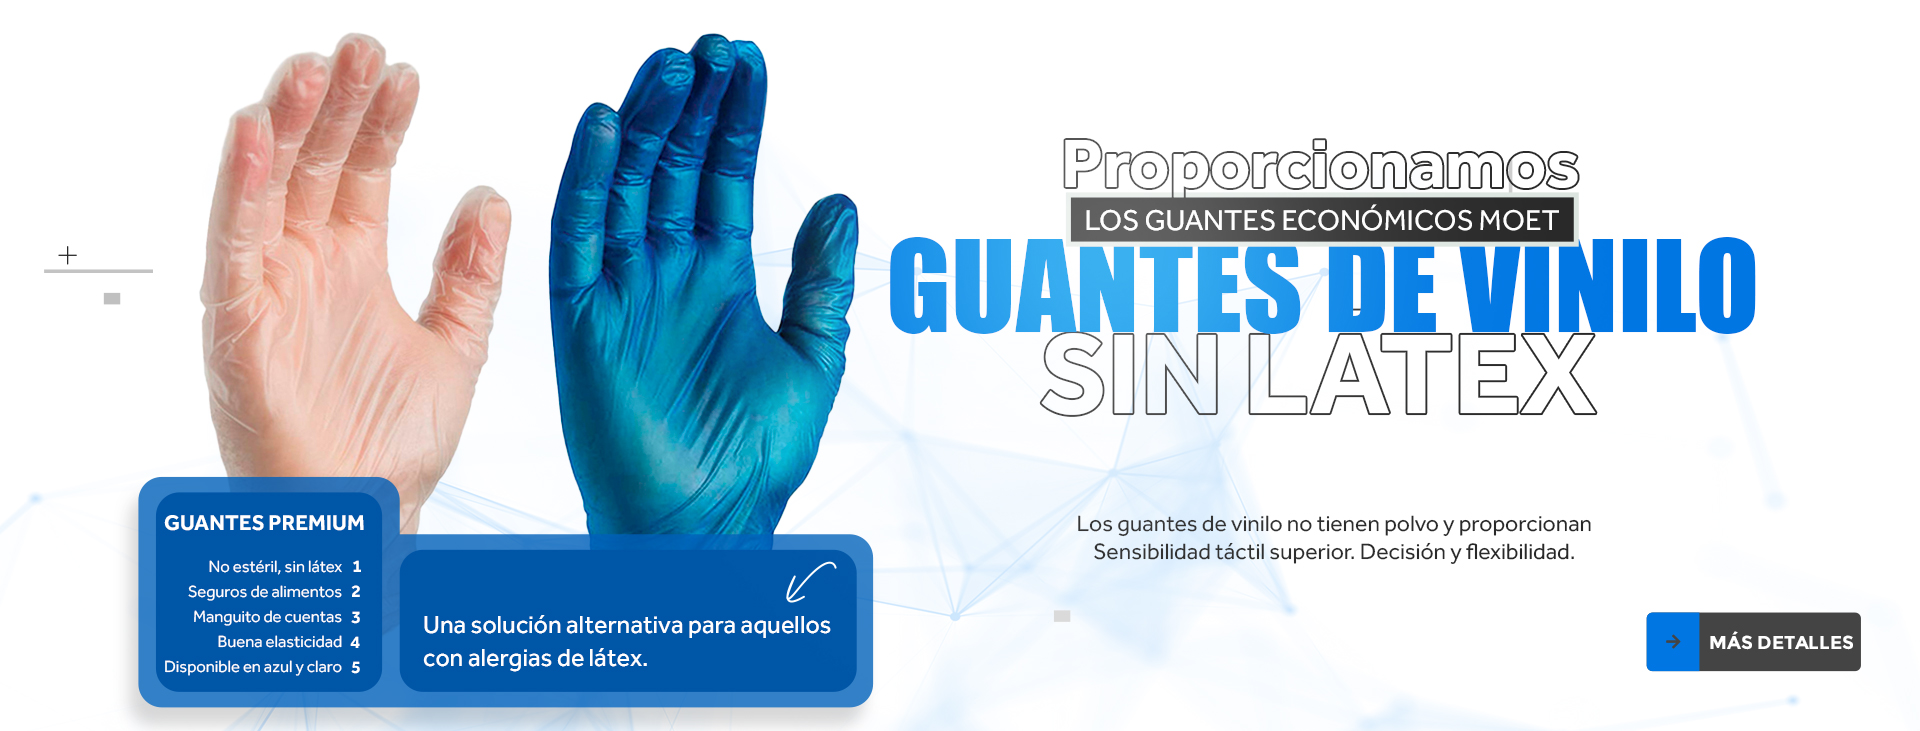 disposable-vinyl-gloves-banner-es